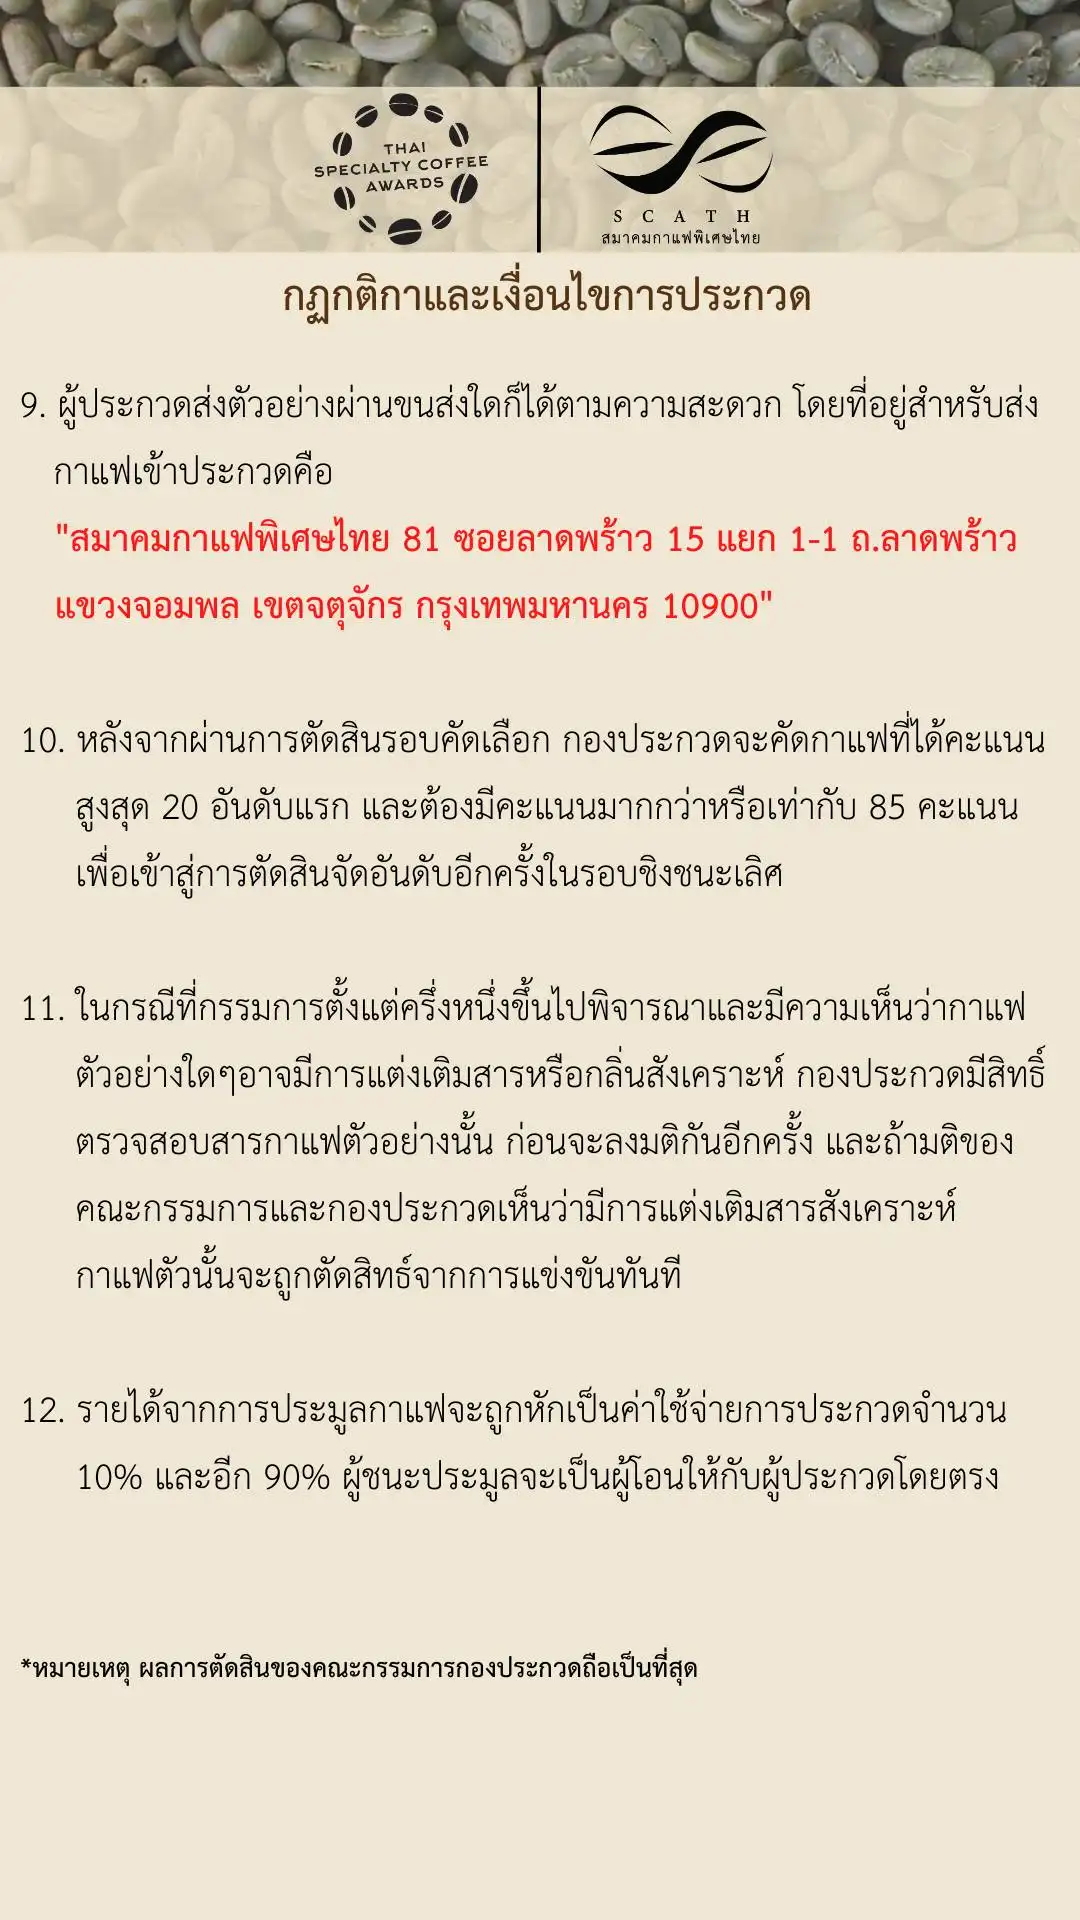 กฏกติกา ประกวดสุดยอดเมล็ดกาแฟพิเศษไทย Thai Specialty Coffee Awards ประจำปี 2566 HealthServ